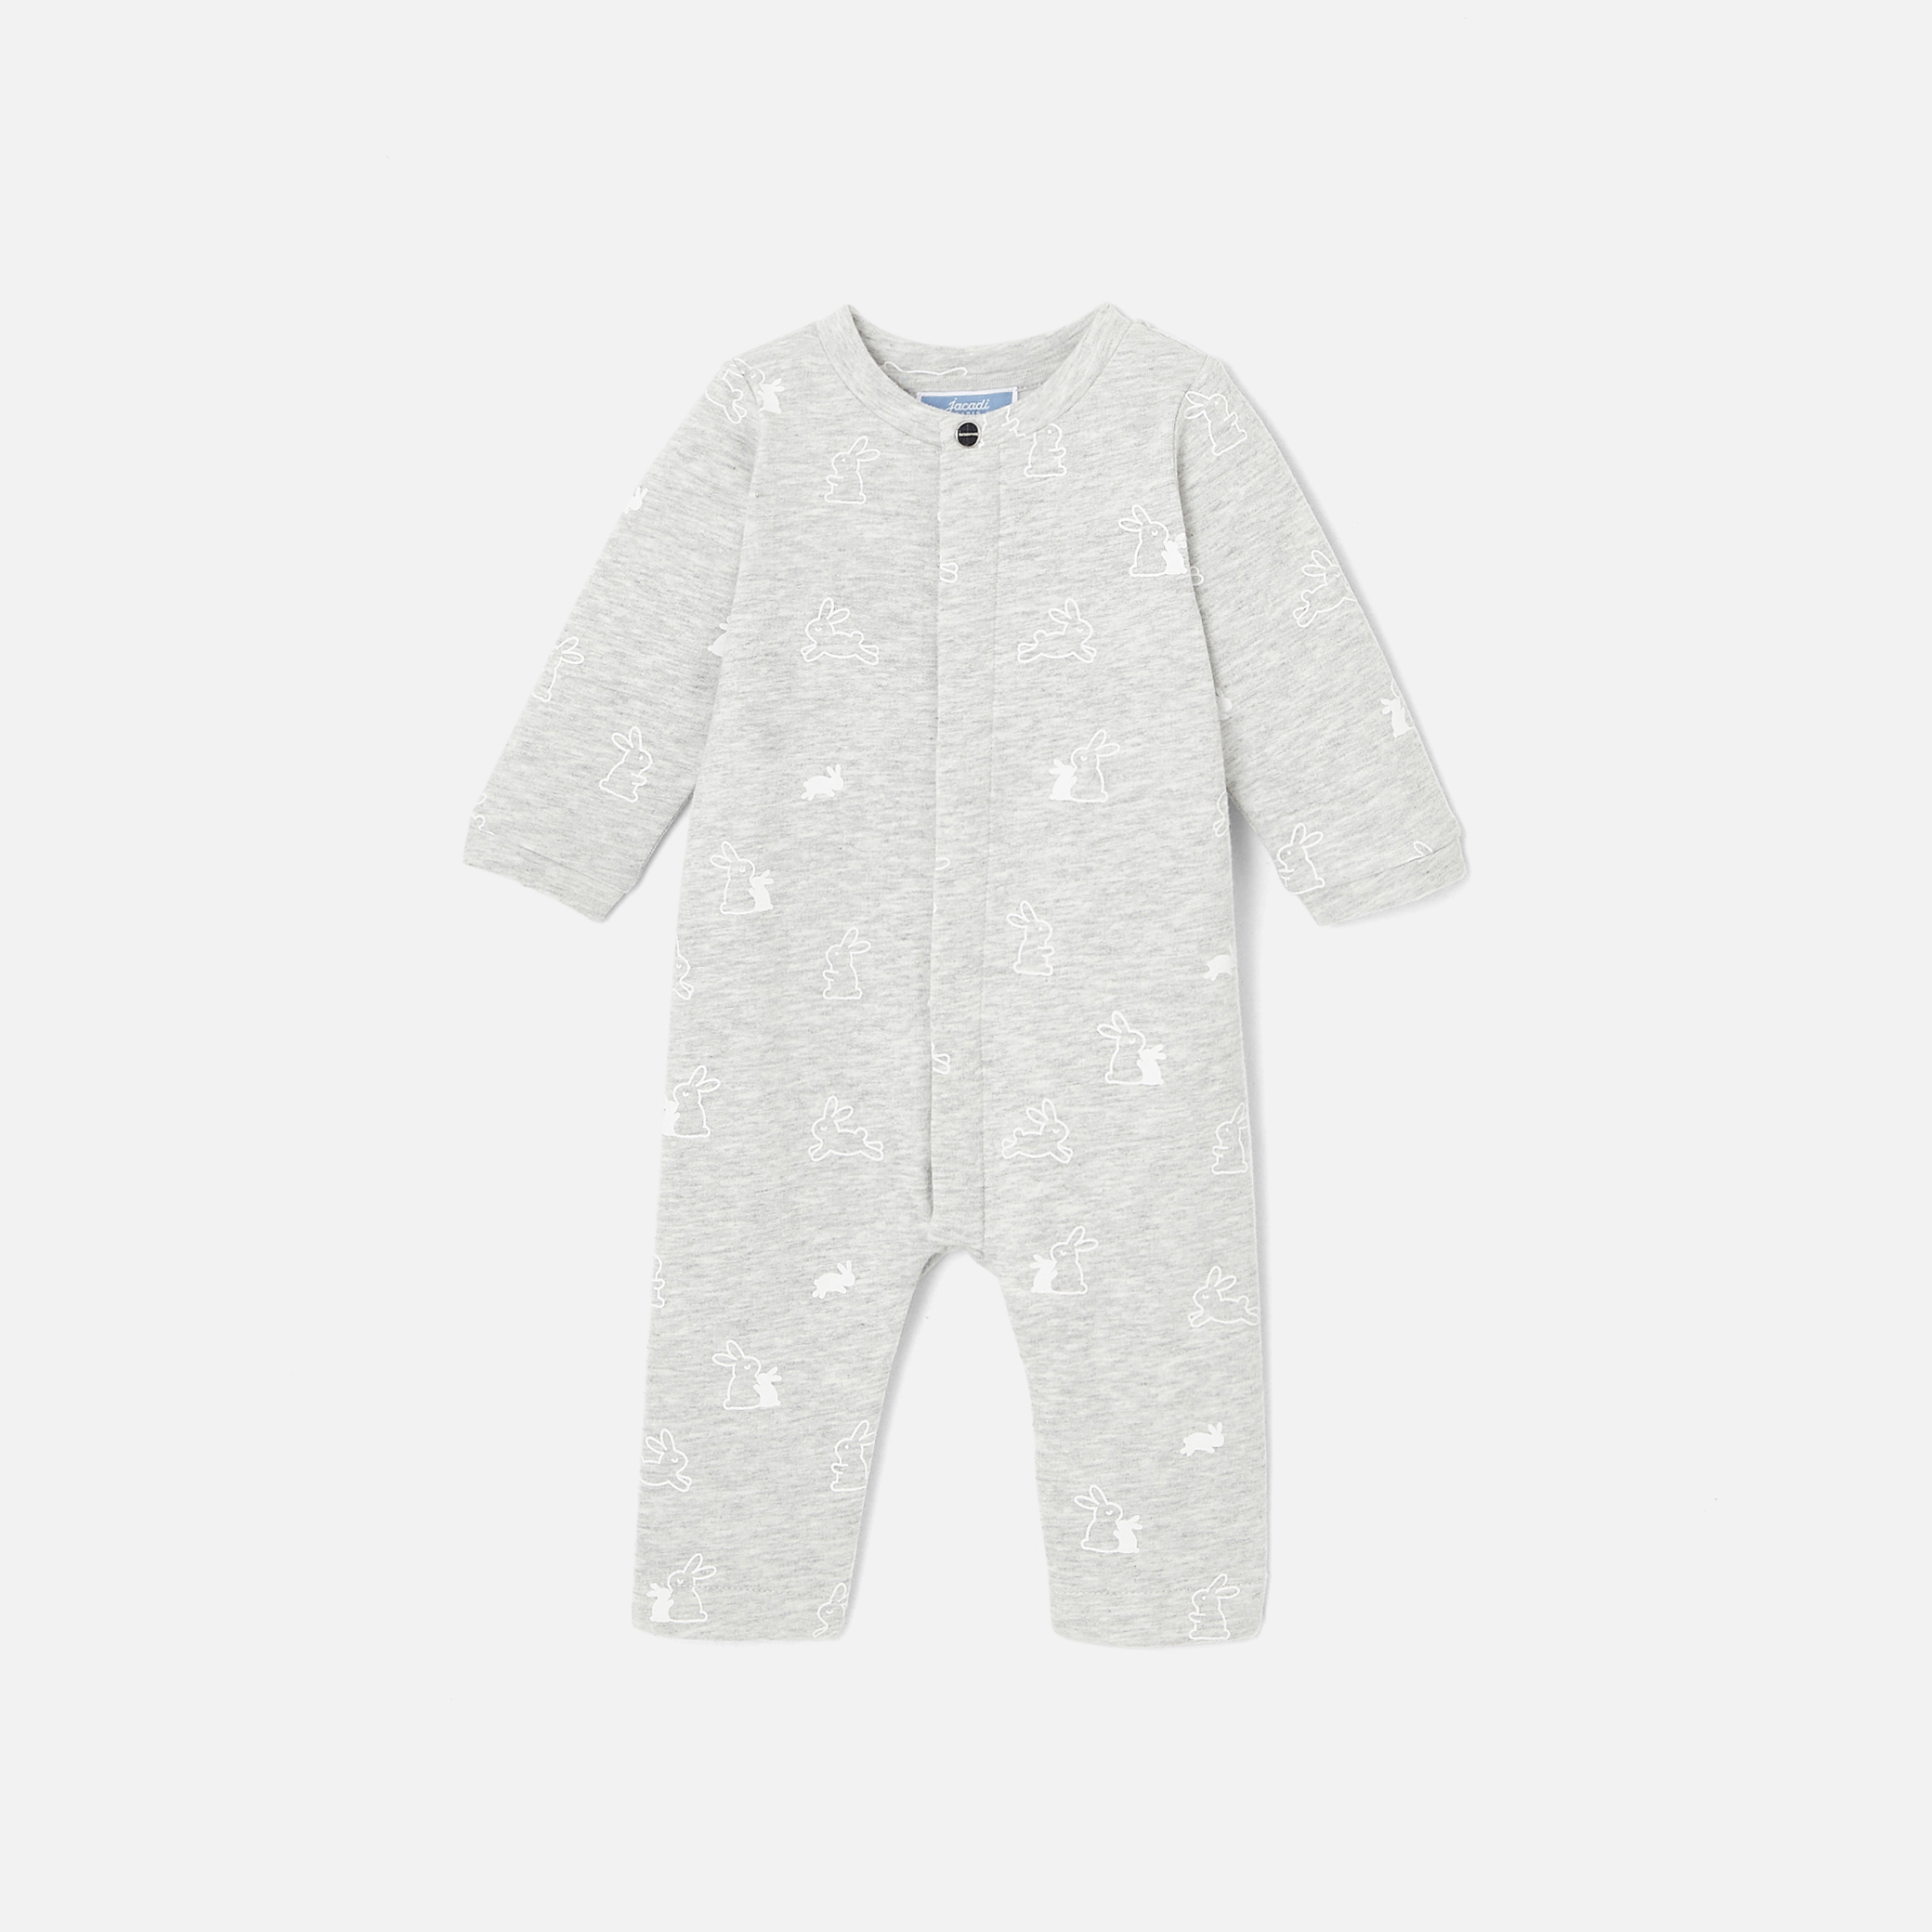 Fleece baby pajamas